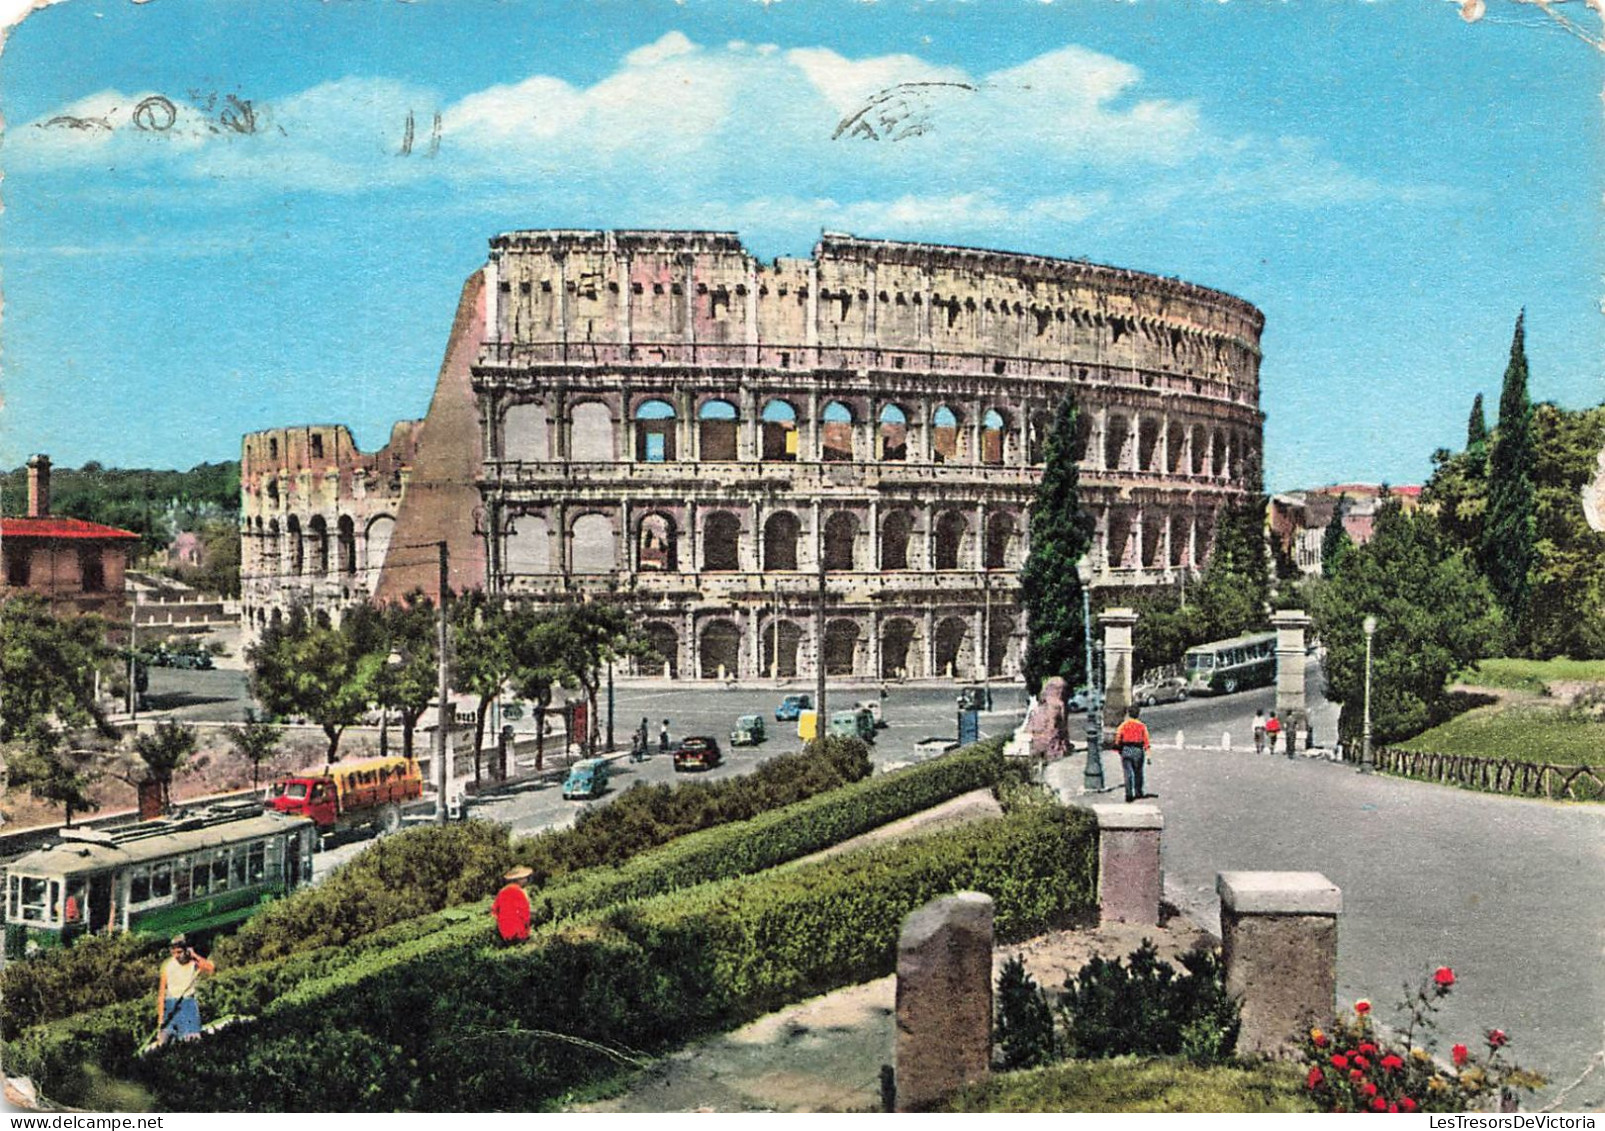 ITALIE - Roma - II Colosseo - Amphithéatre Flavius Ou Colisée - Animé - Carte Postale Ancienne - Colisée